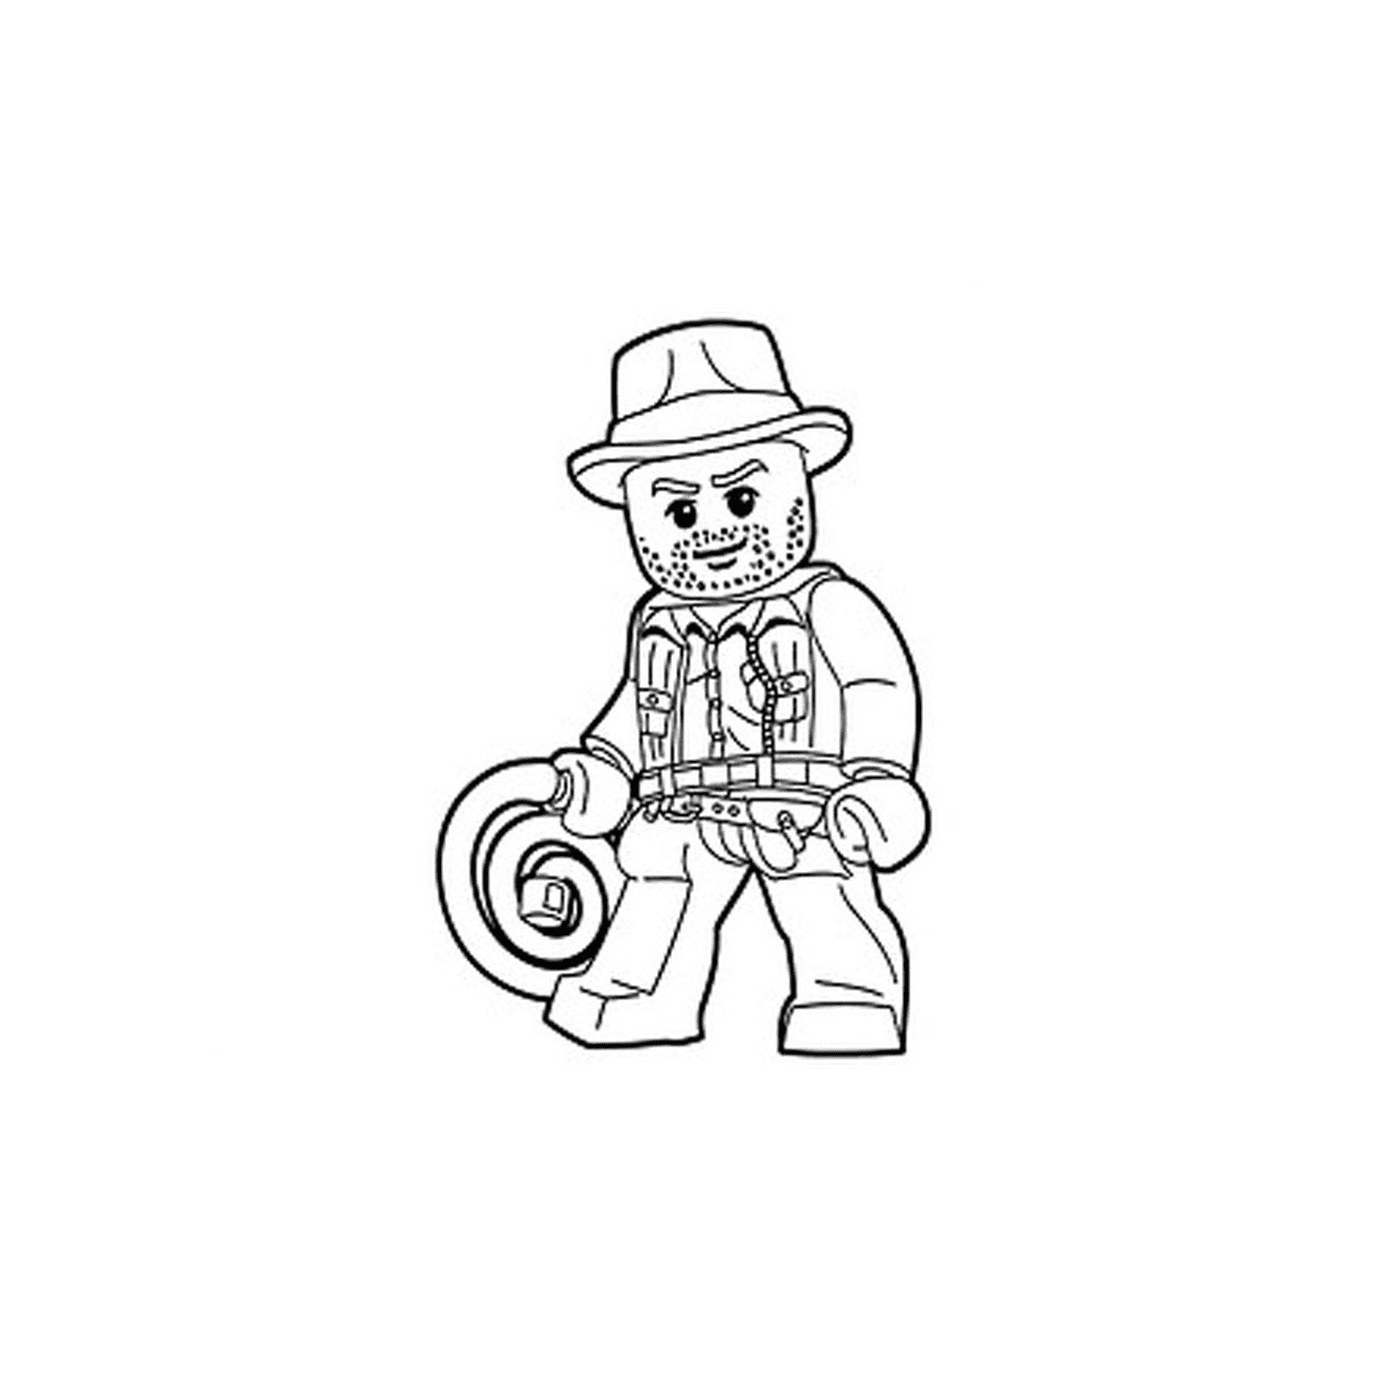  Character Lego Indiana Jones 